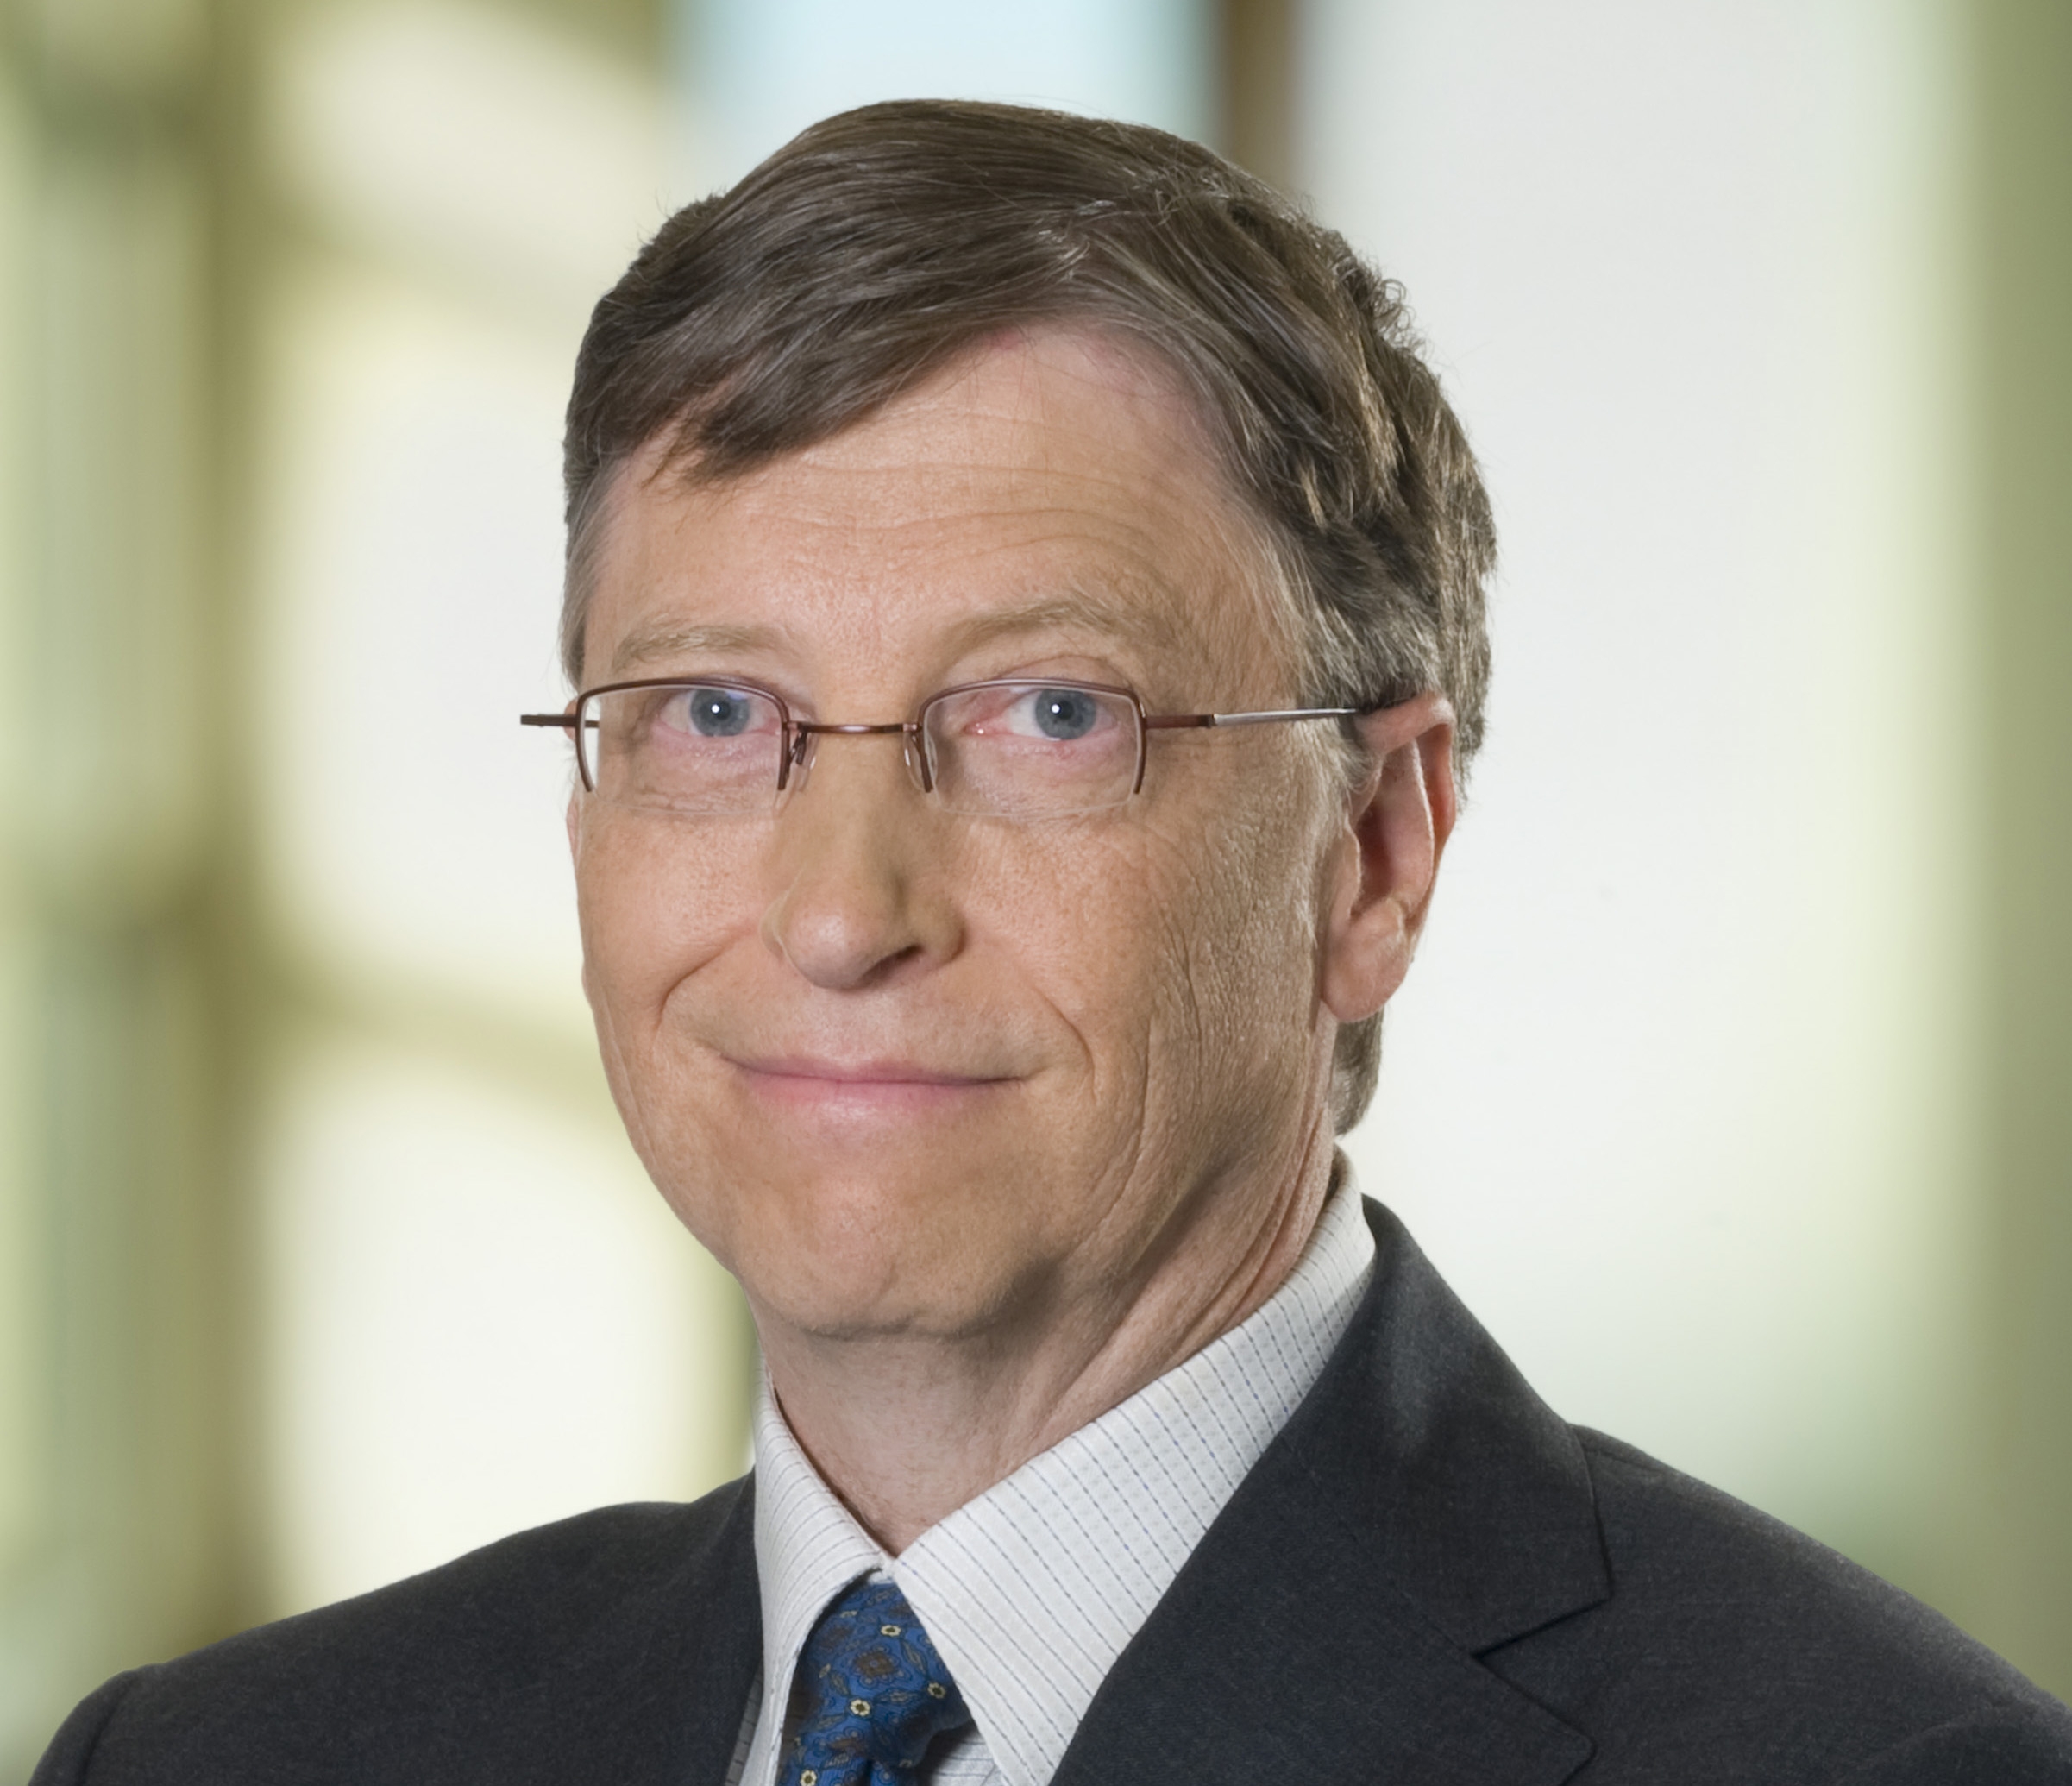 Bill Gates to visit MIT on April 21 MIT News